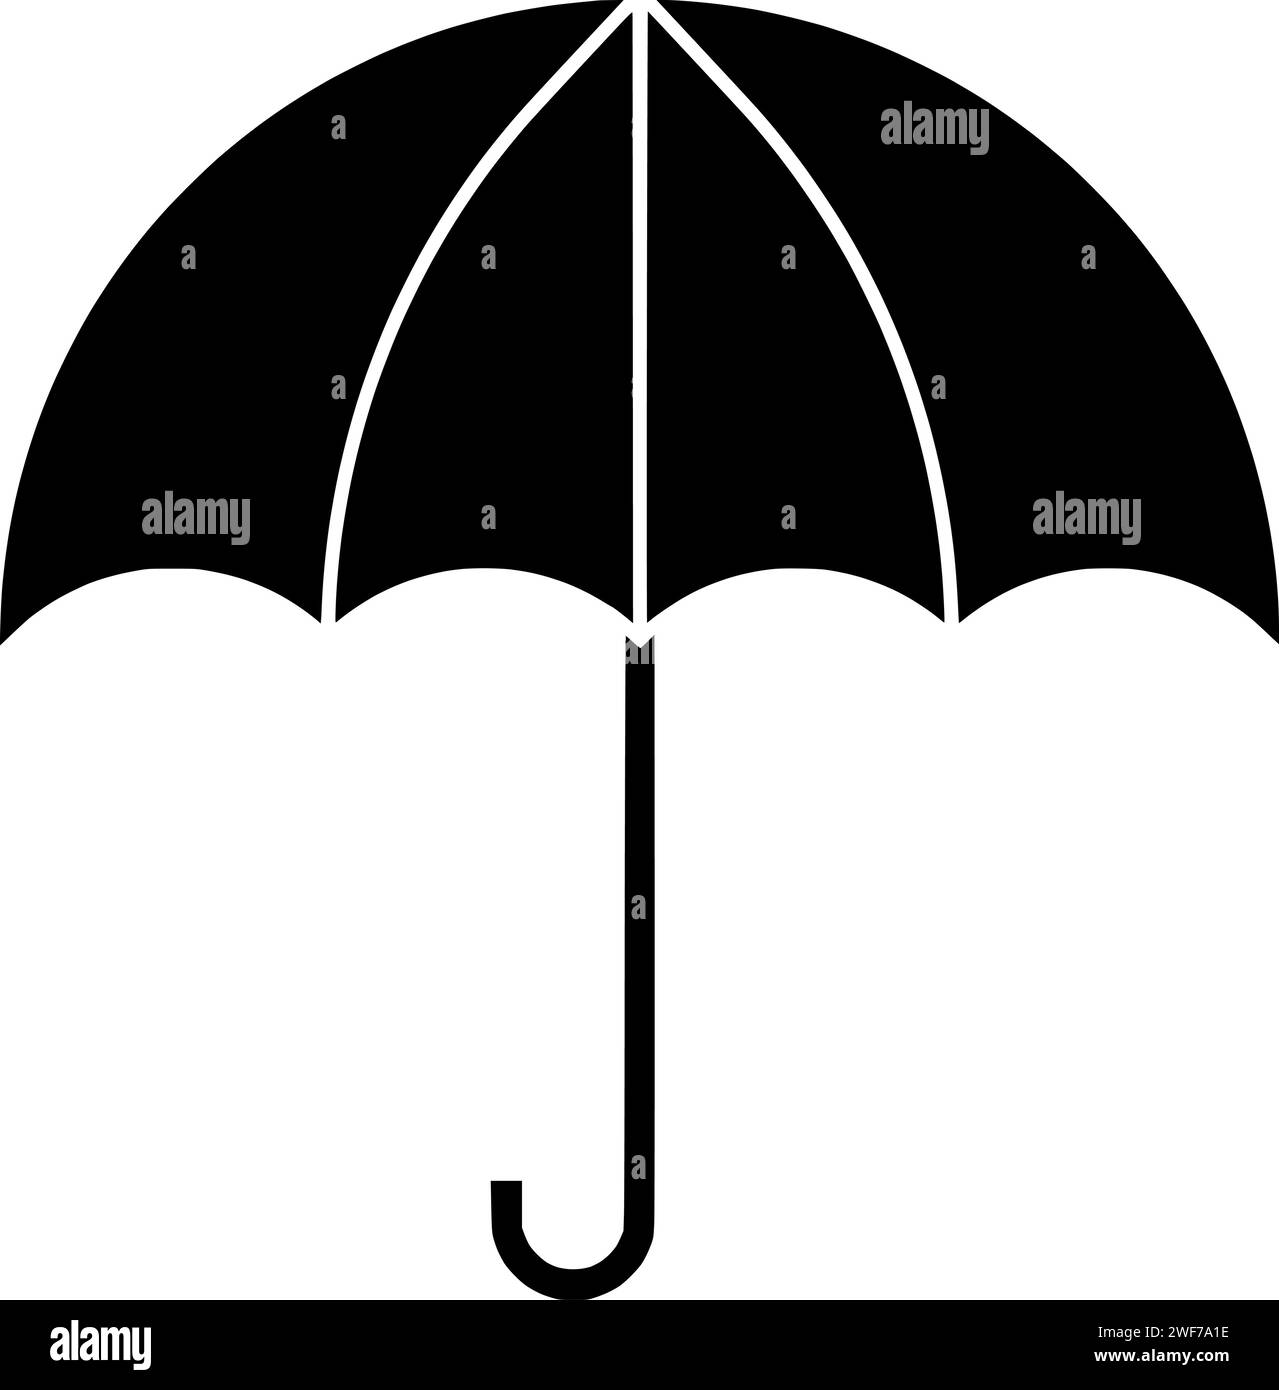 paraguas ilustración protección silueta parasol logo temporada icono contorno del tiempo abierto mango de lluvia protege el agua otoño lluvioso accesorio meteorología forma sombrilla seguro seco Ilustración del Vector